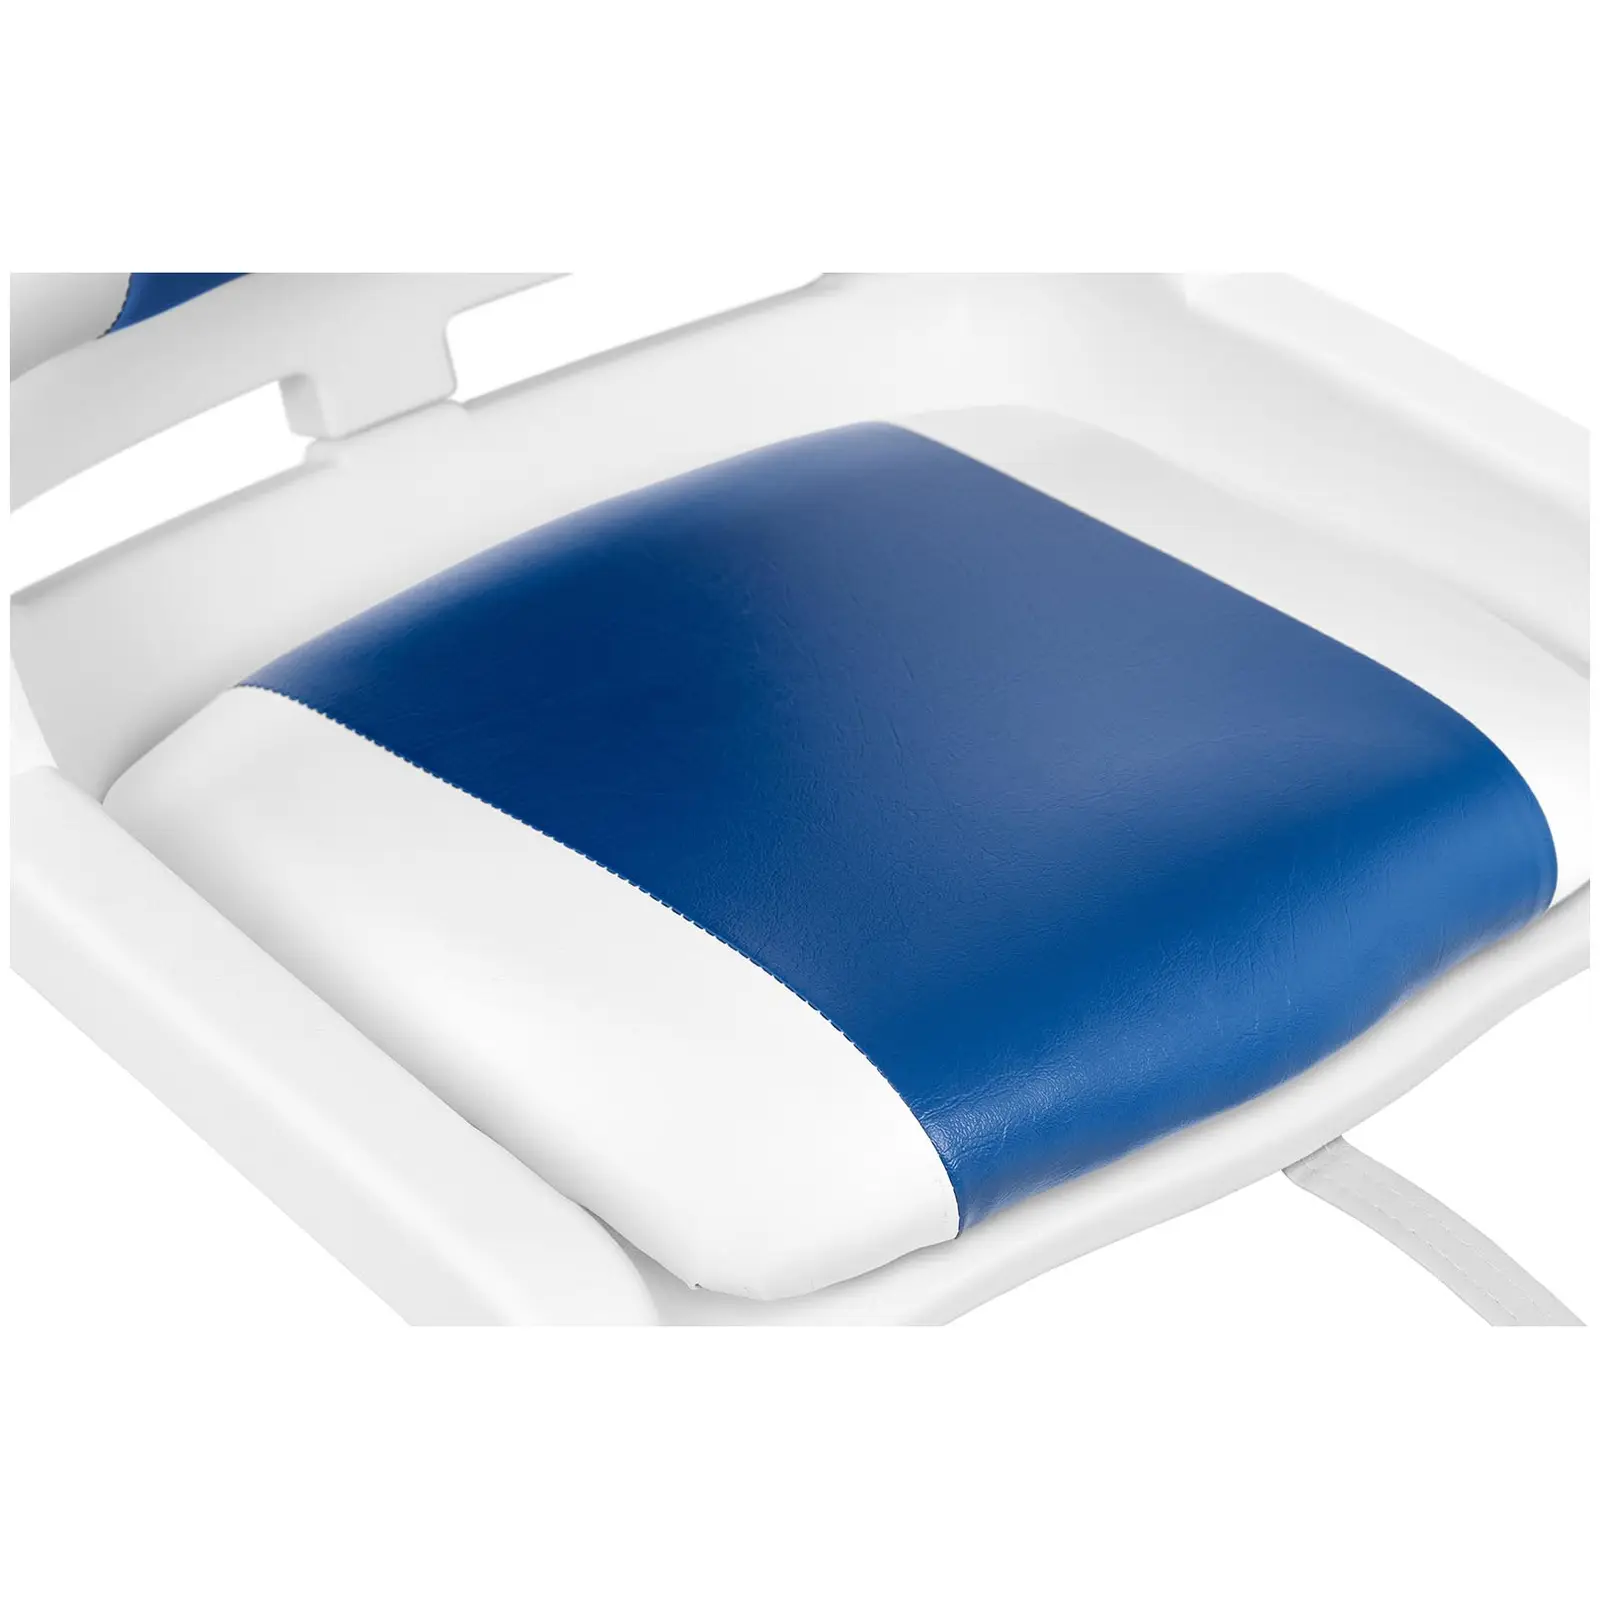 Fotel do łodzi - 45x51x38 cm - biało-niebieski